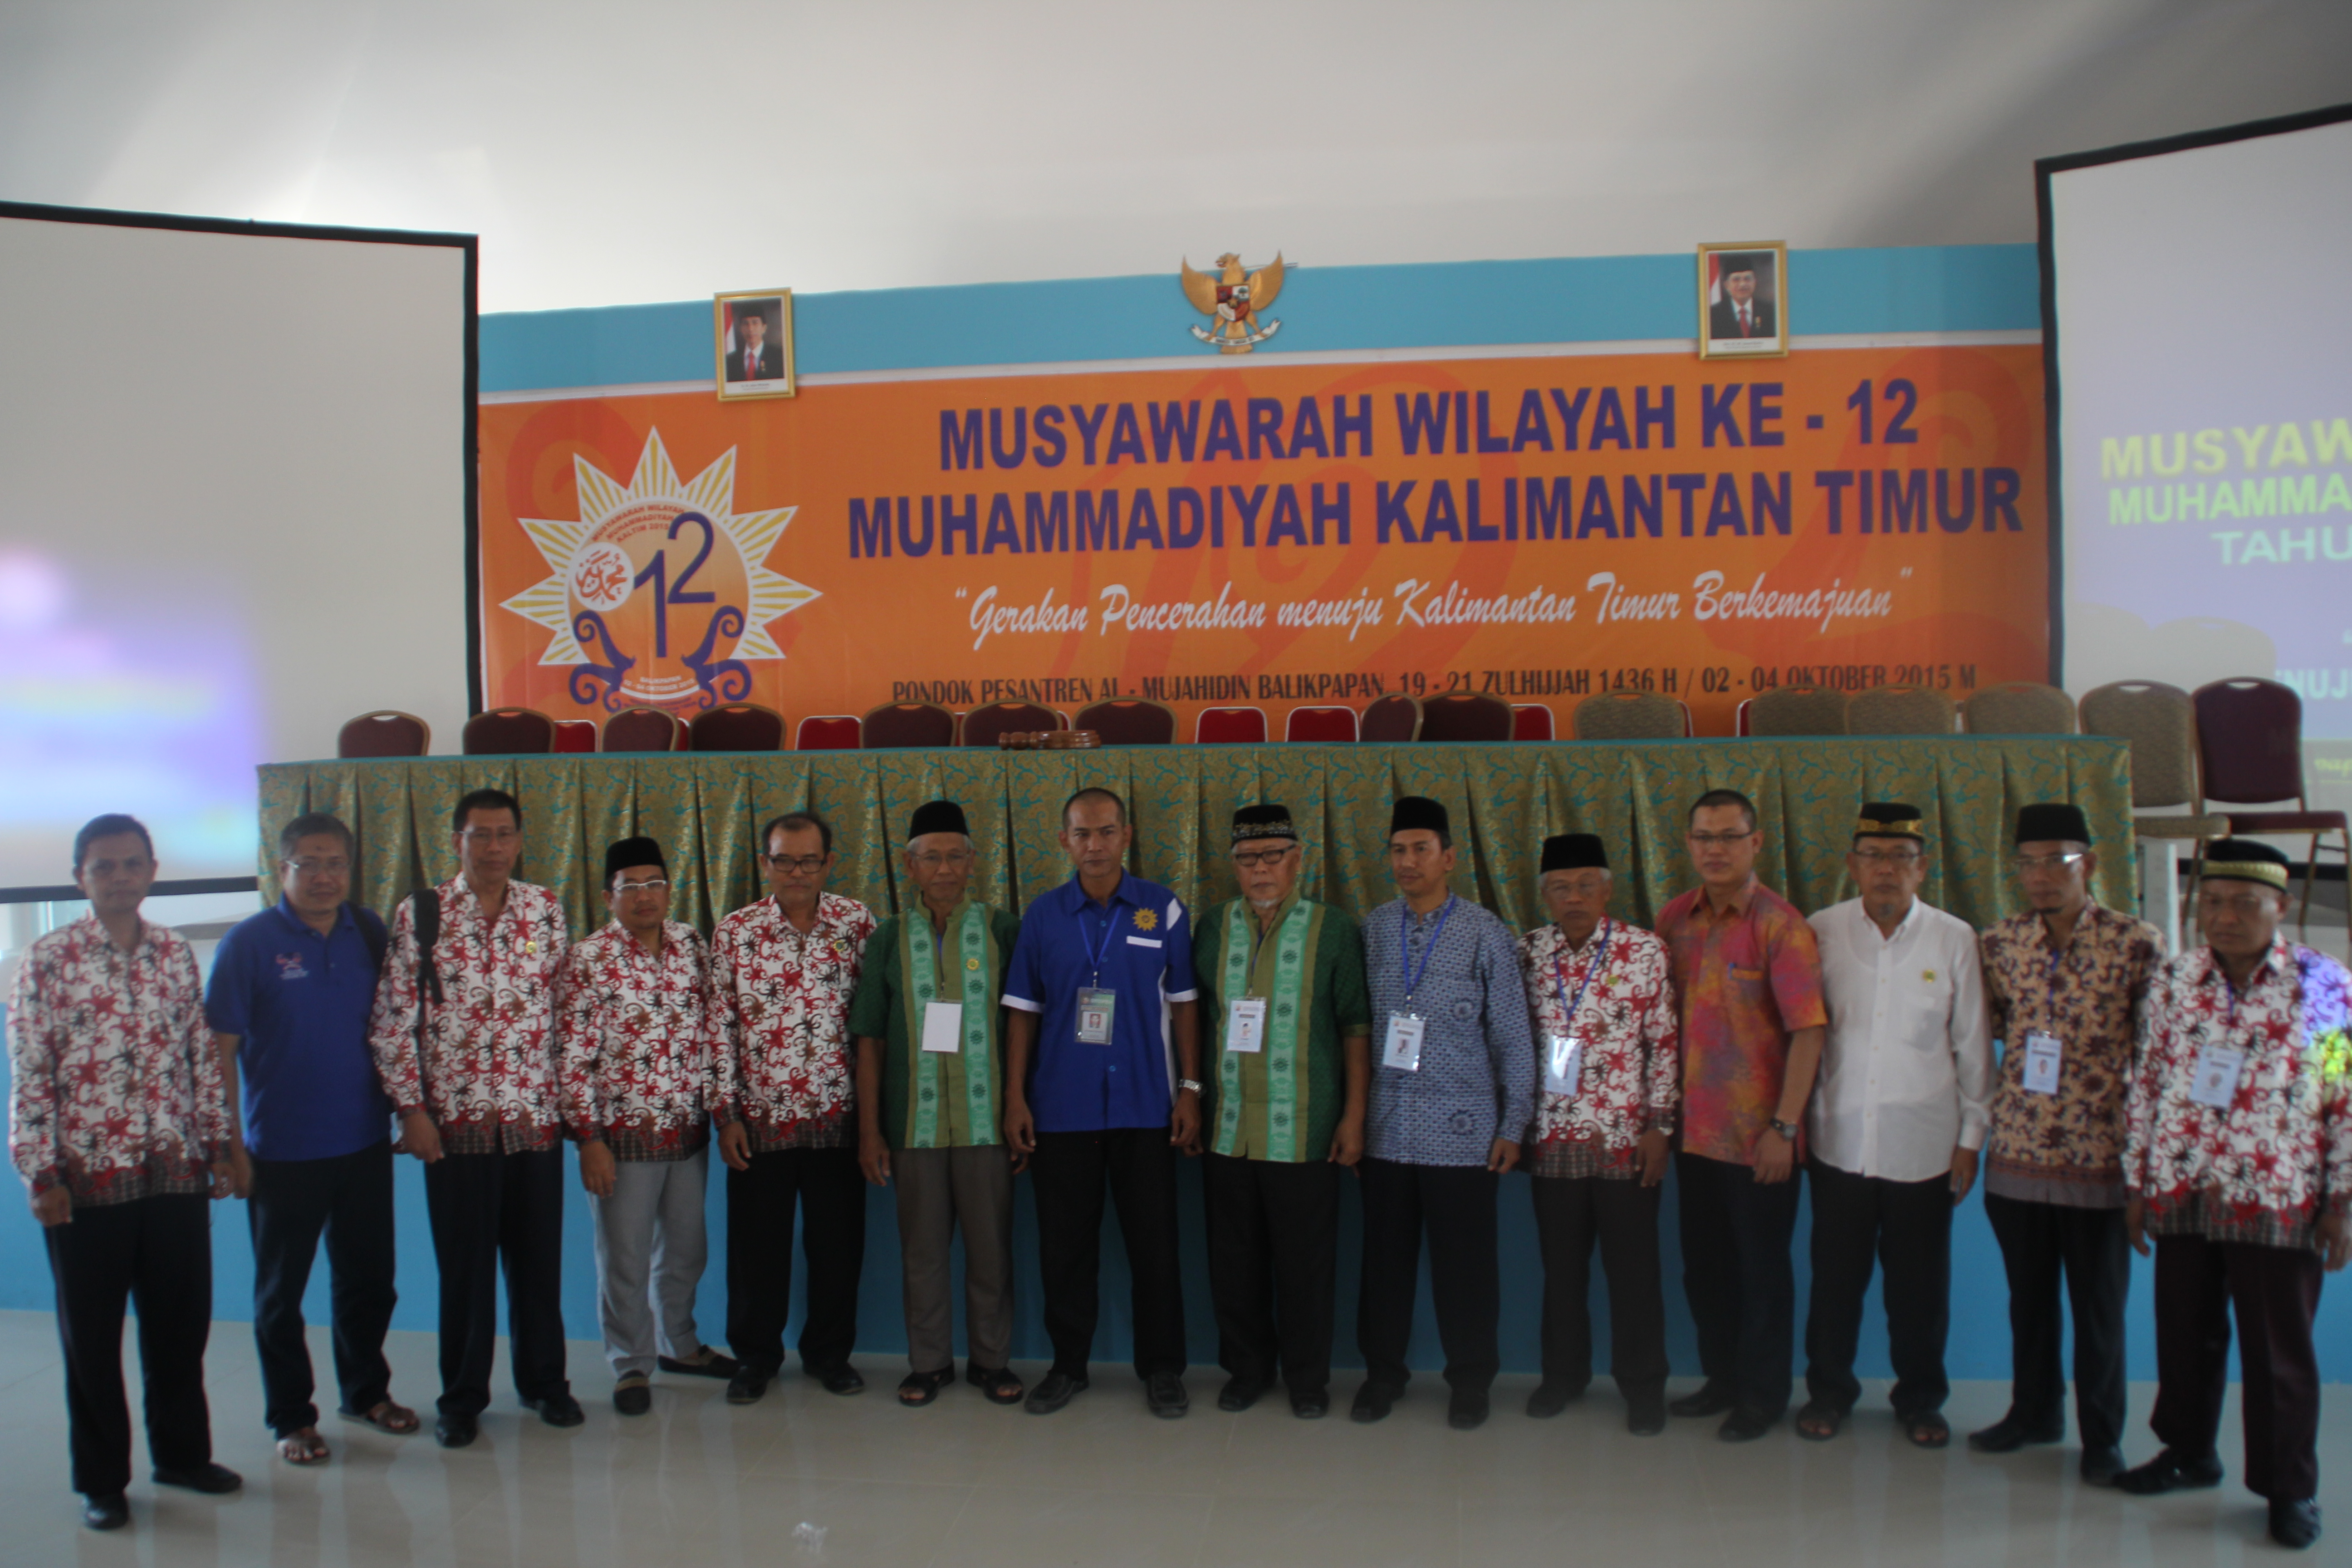 Majelis Ekonomi dan Kewirausahaan PW Muhammadiyah Kalimantan Timur